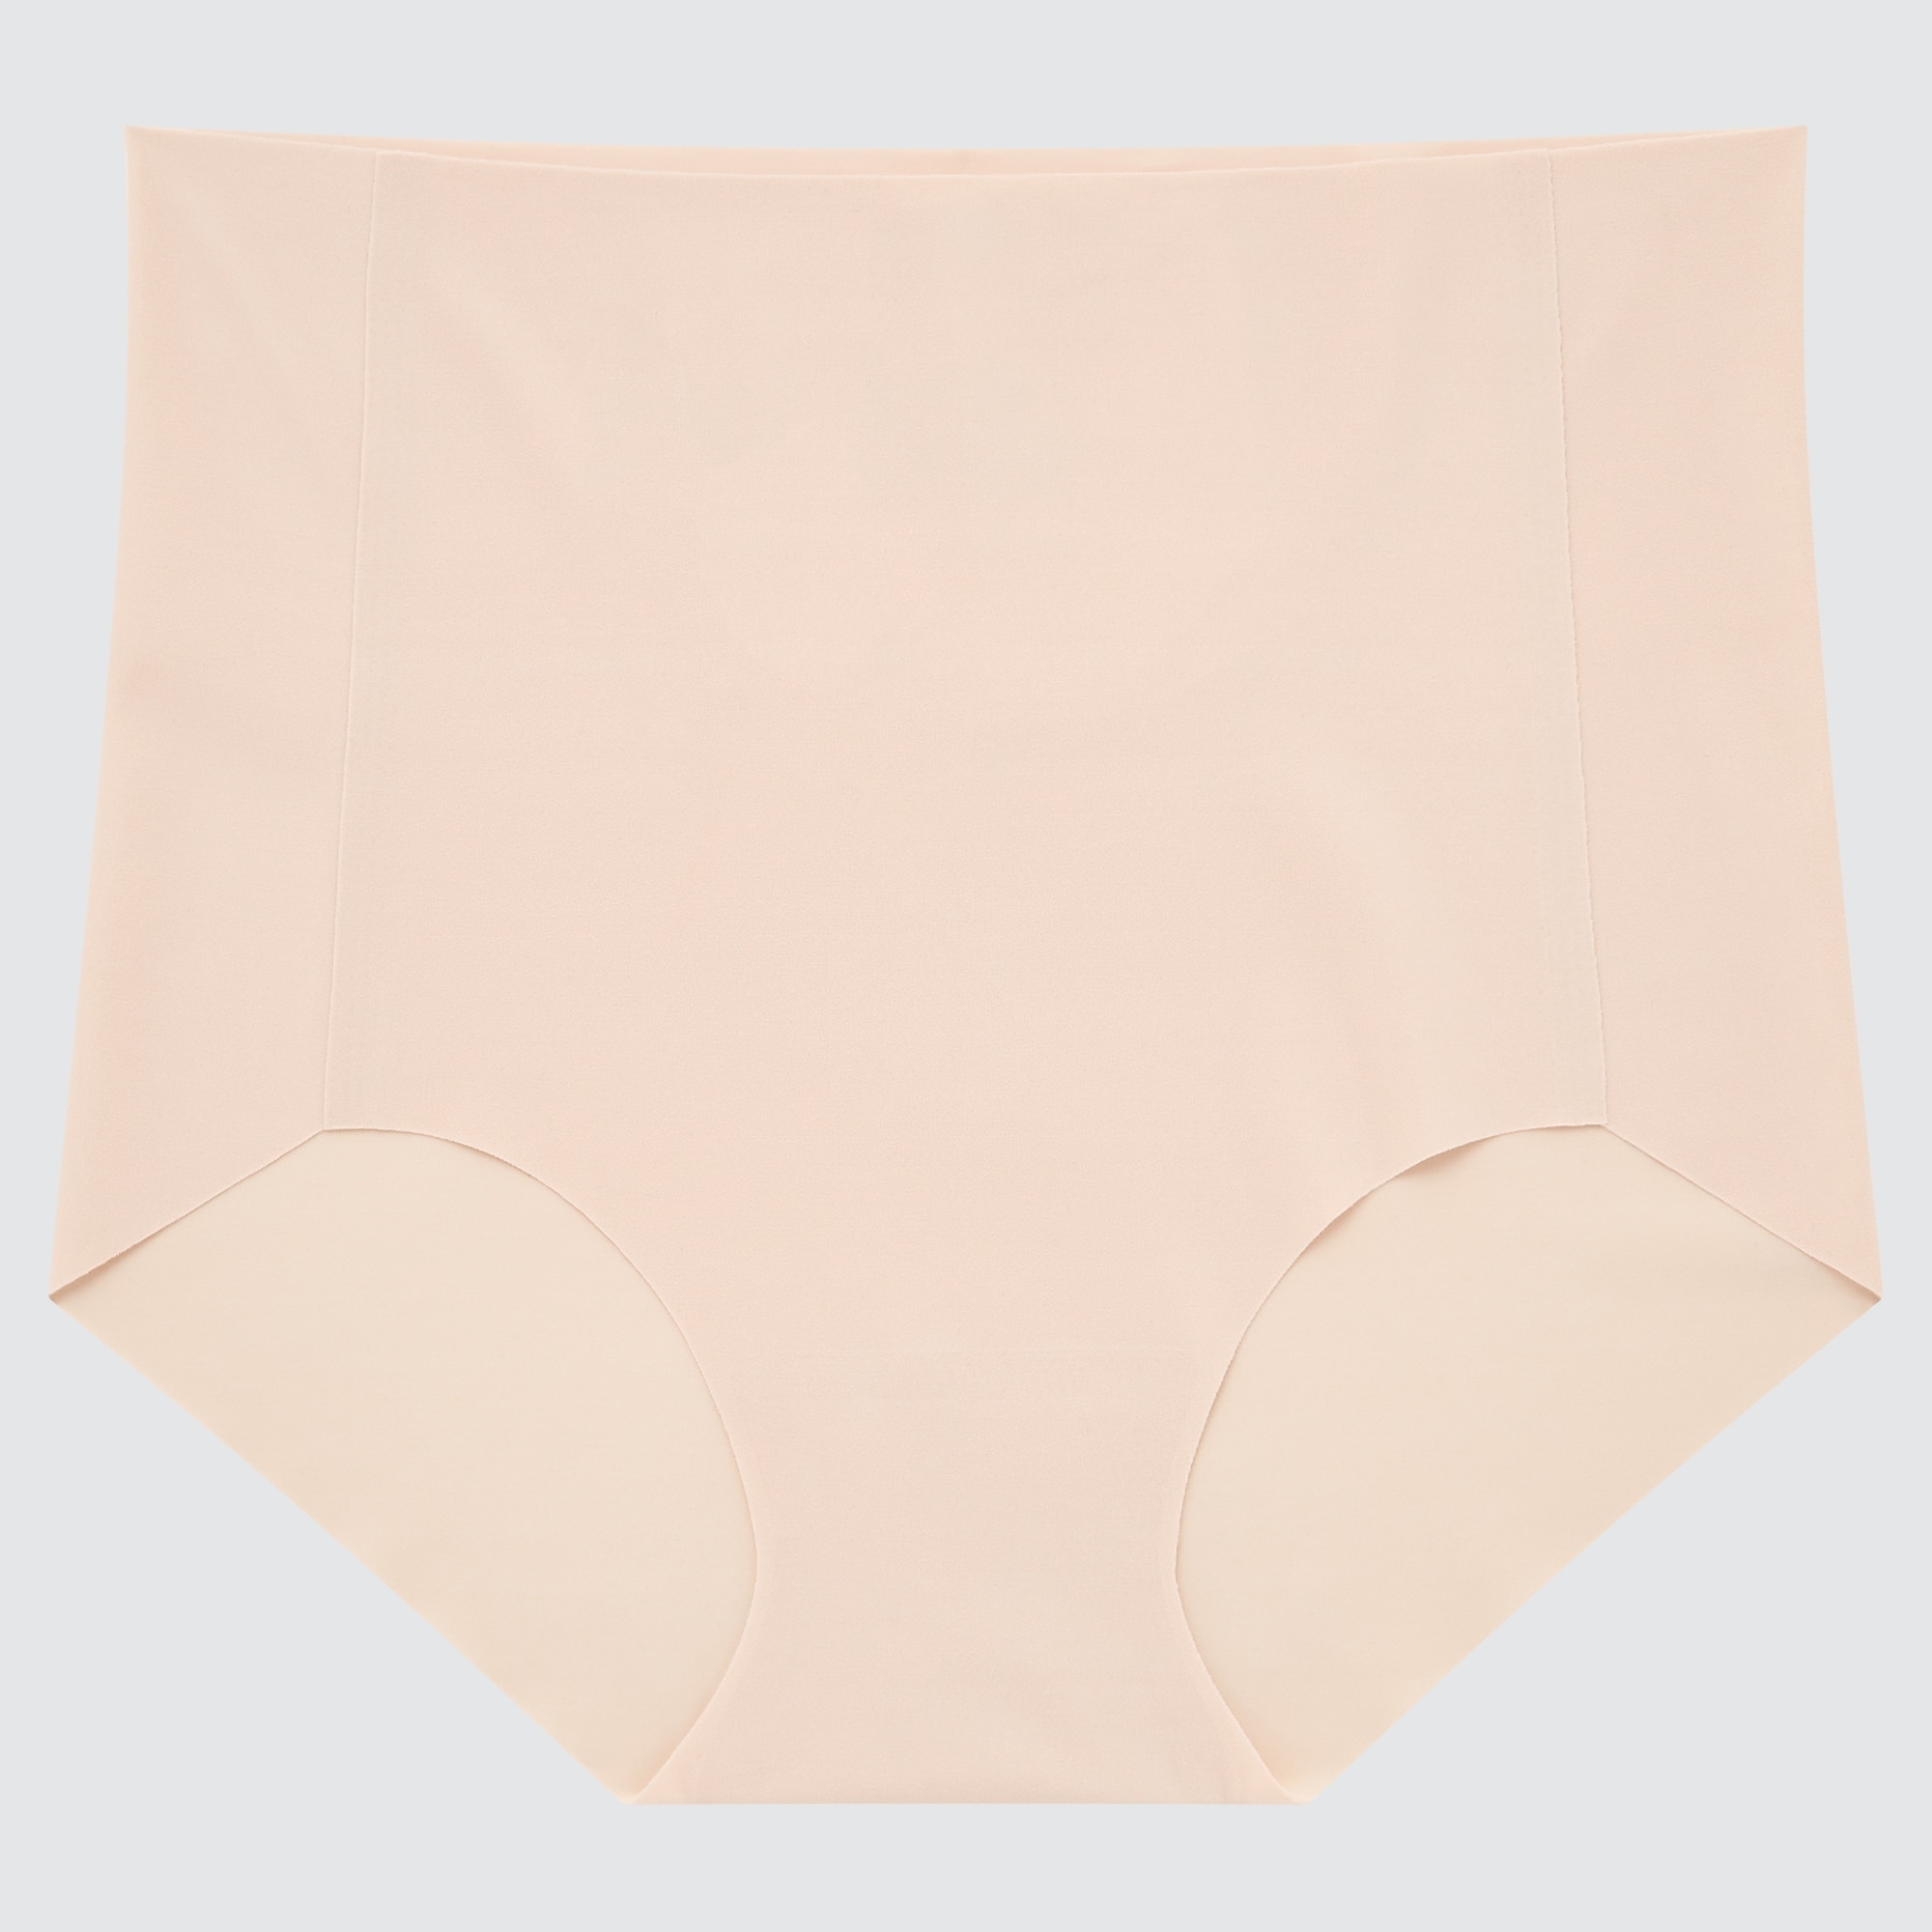 Buy Uniqlo Womens Underwear online